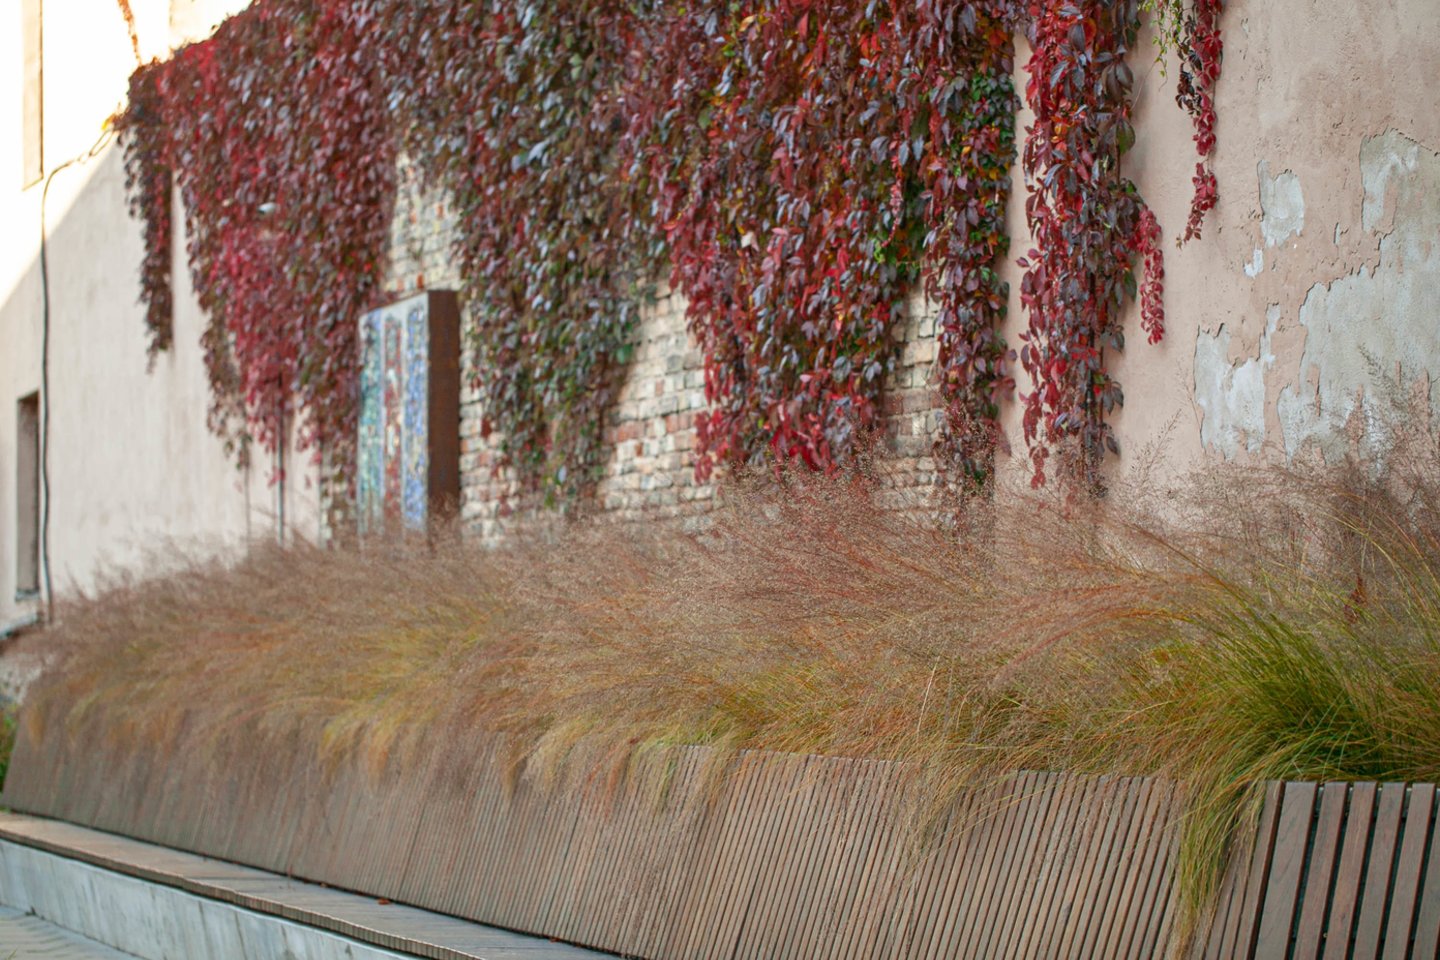 Vienu sėkmingiausių savo kūrinių kraštovaizdžio dizainerė laiko sostinėje esančio MO muziejaus kiemelį.<br>Nuotr. iš asmeninio albumo